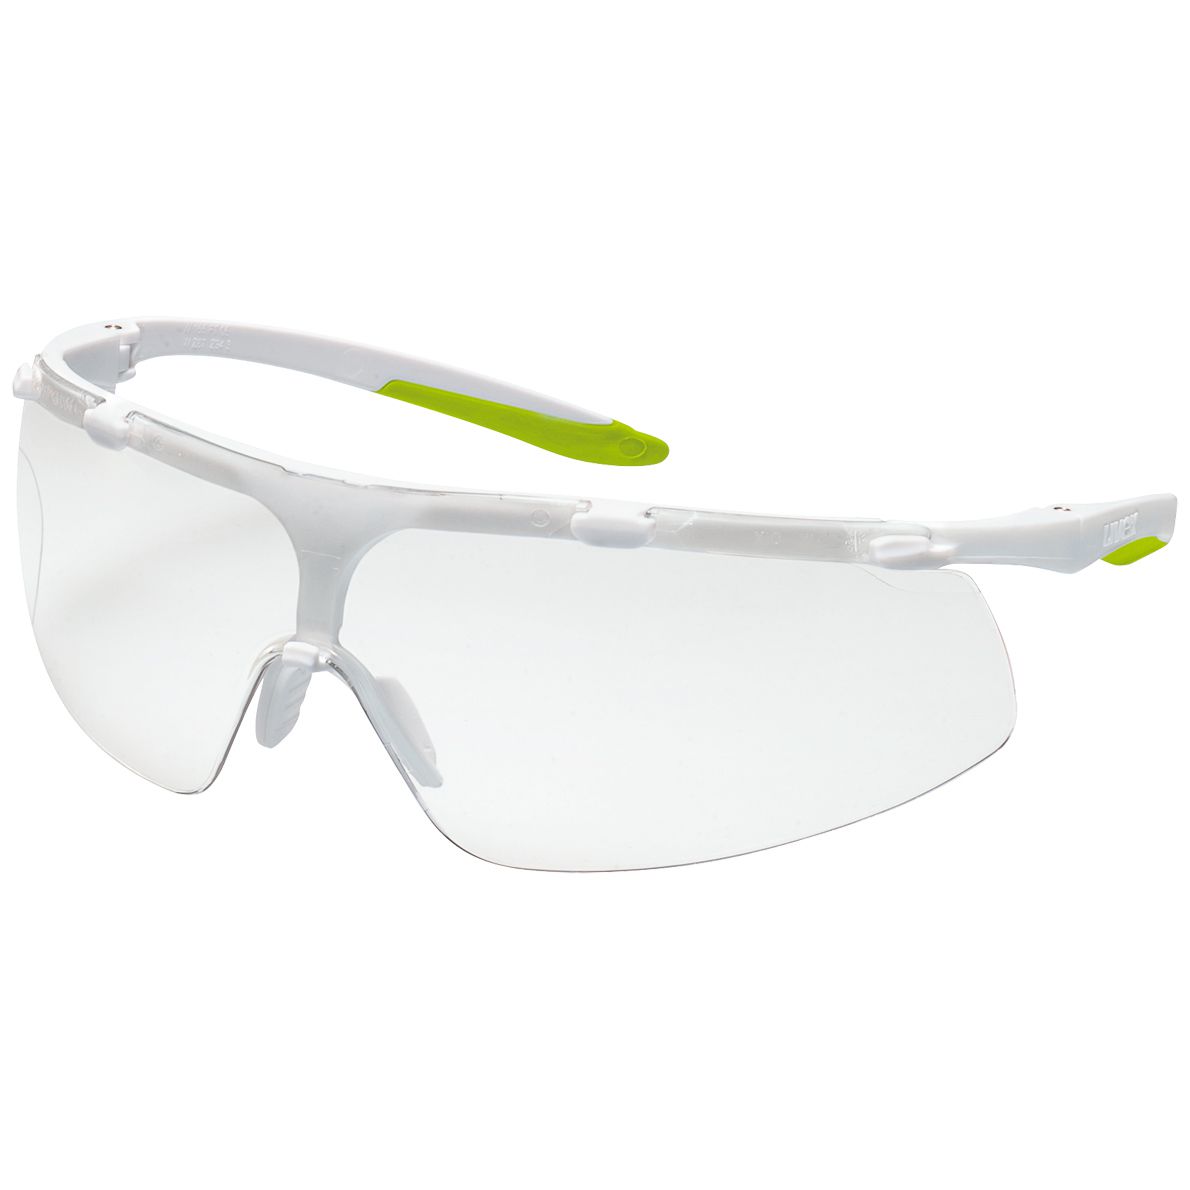 uvex super fit 9178 Schutzbrille - kratz- & beschlagfest dank supravision excellence - EN 166/170 - Weiß-Lime/Klar